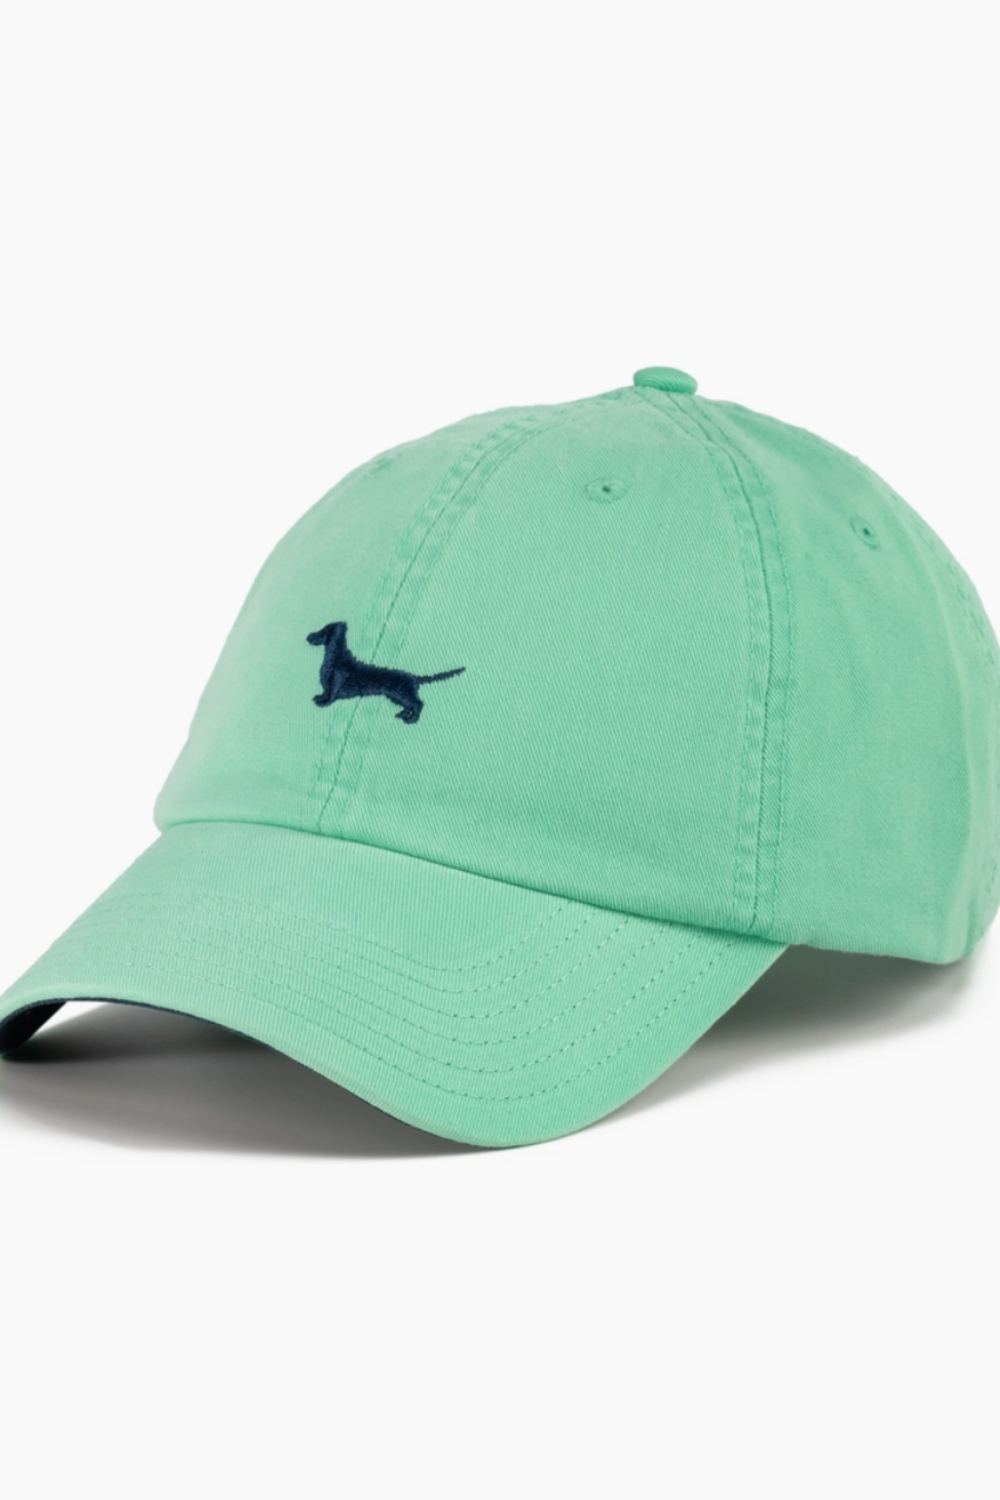 green dachshund cap